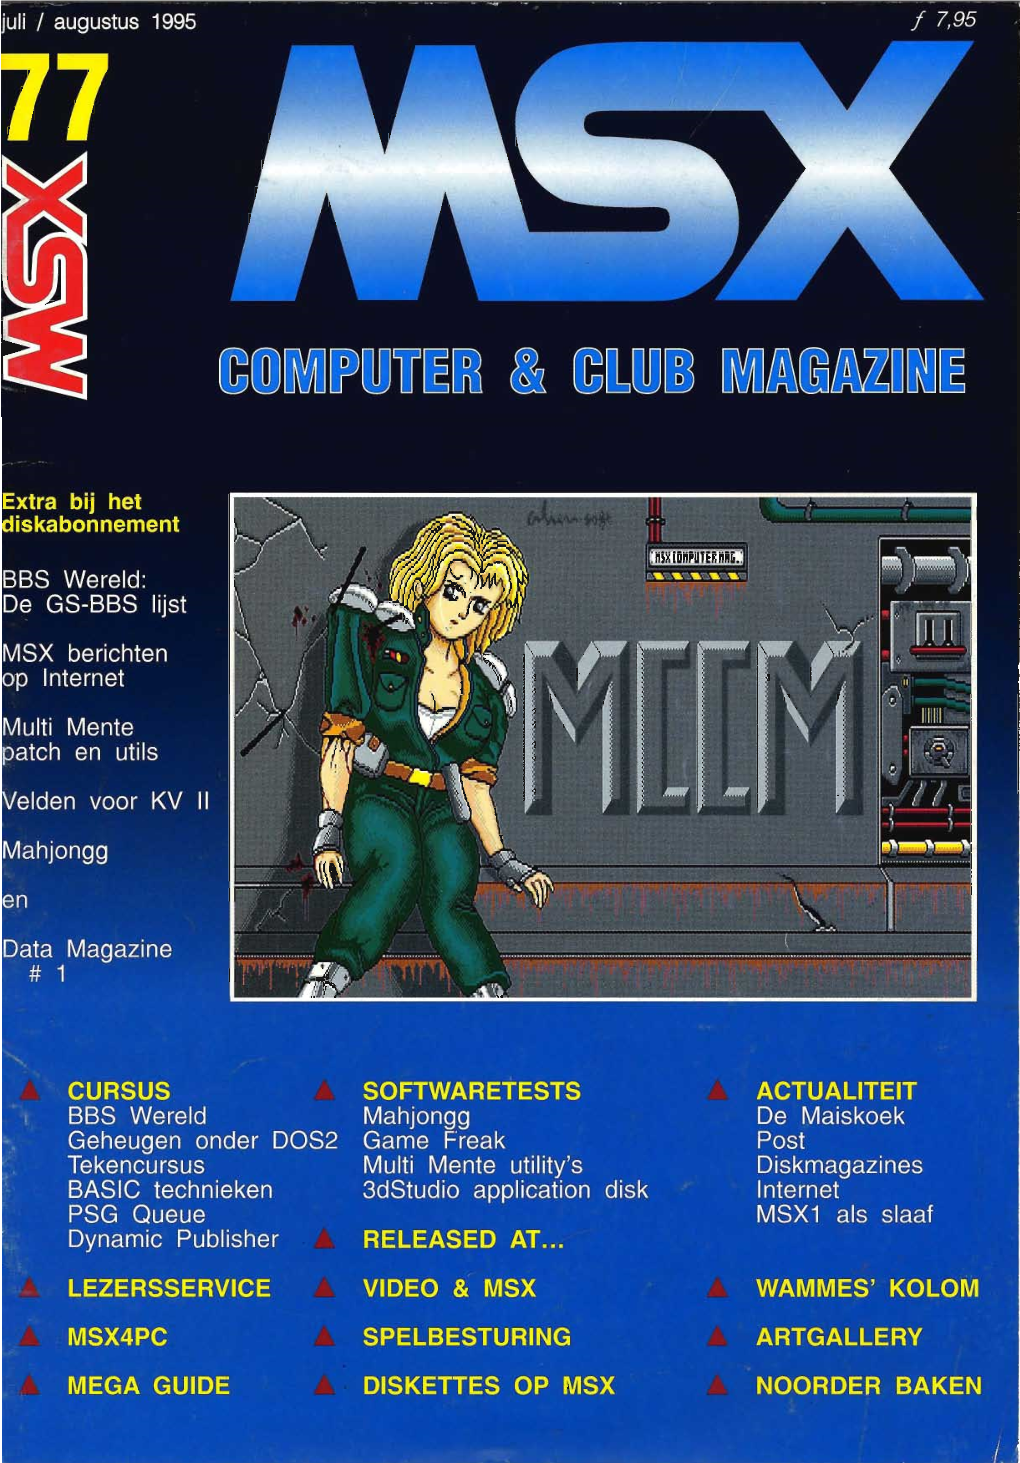 De MSX2 Emulator Voor PC